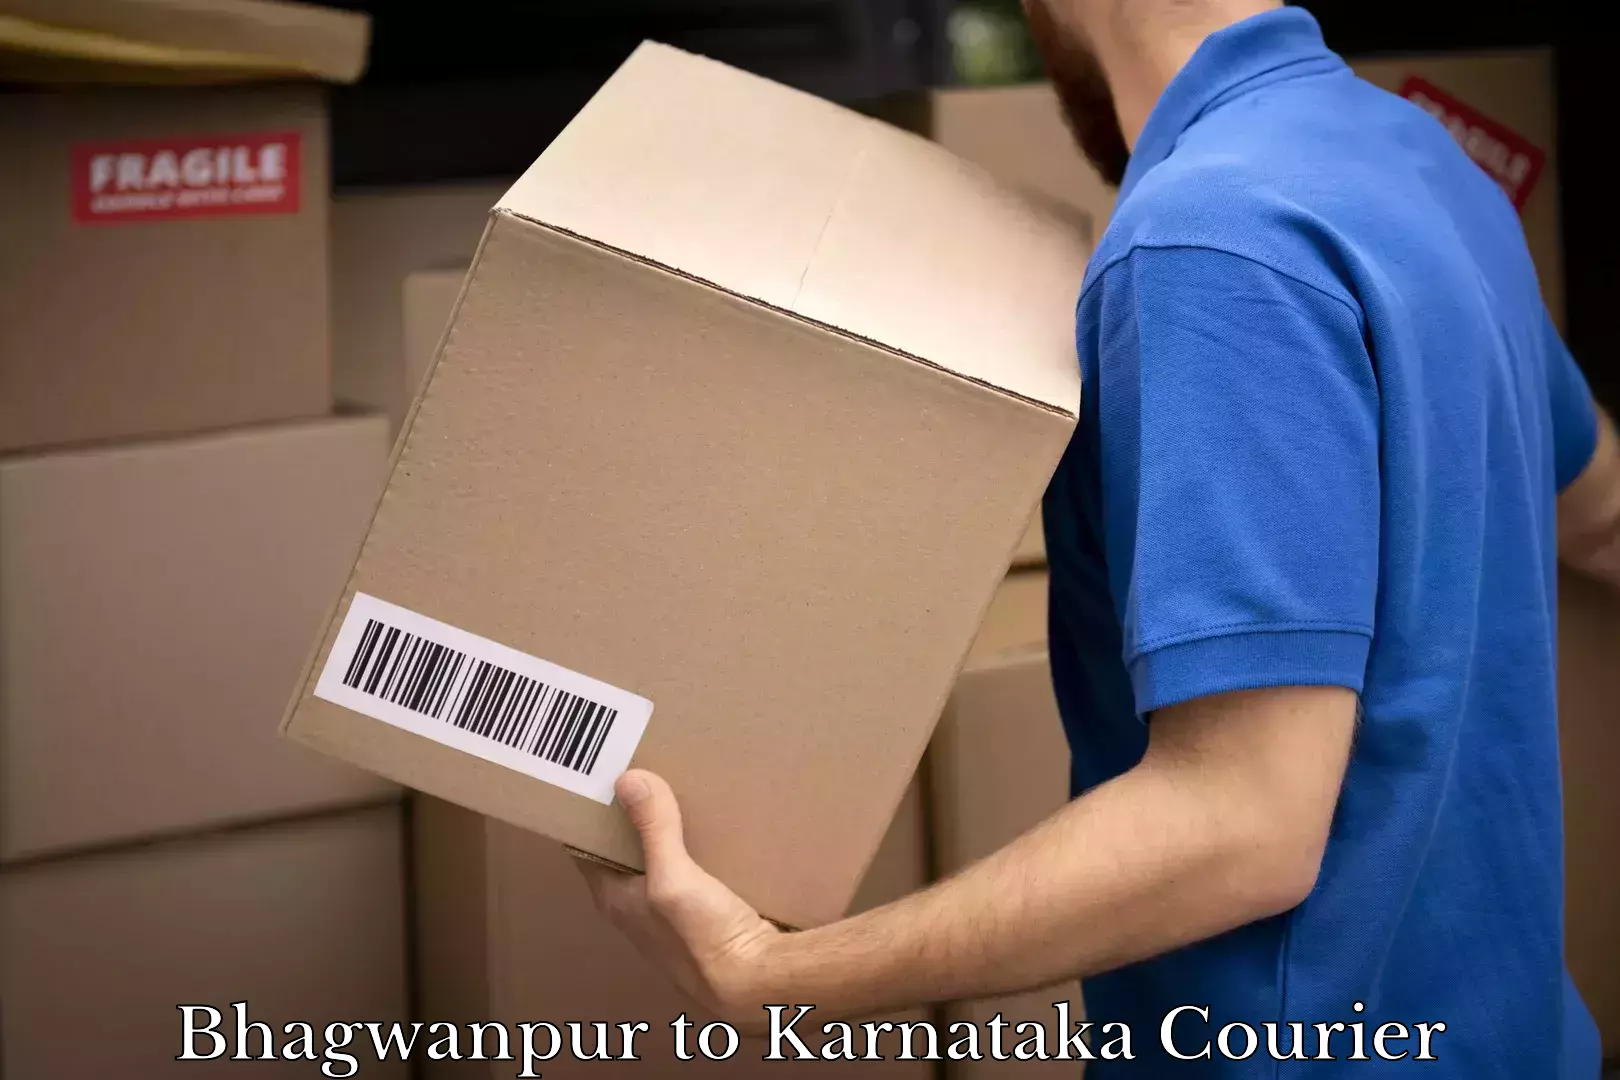 Nationwide shipping capabilities Bhagwanpur to Karnataka